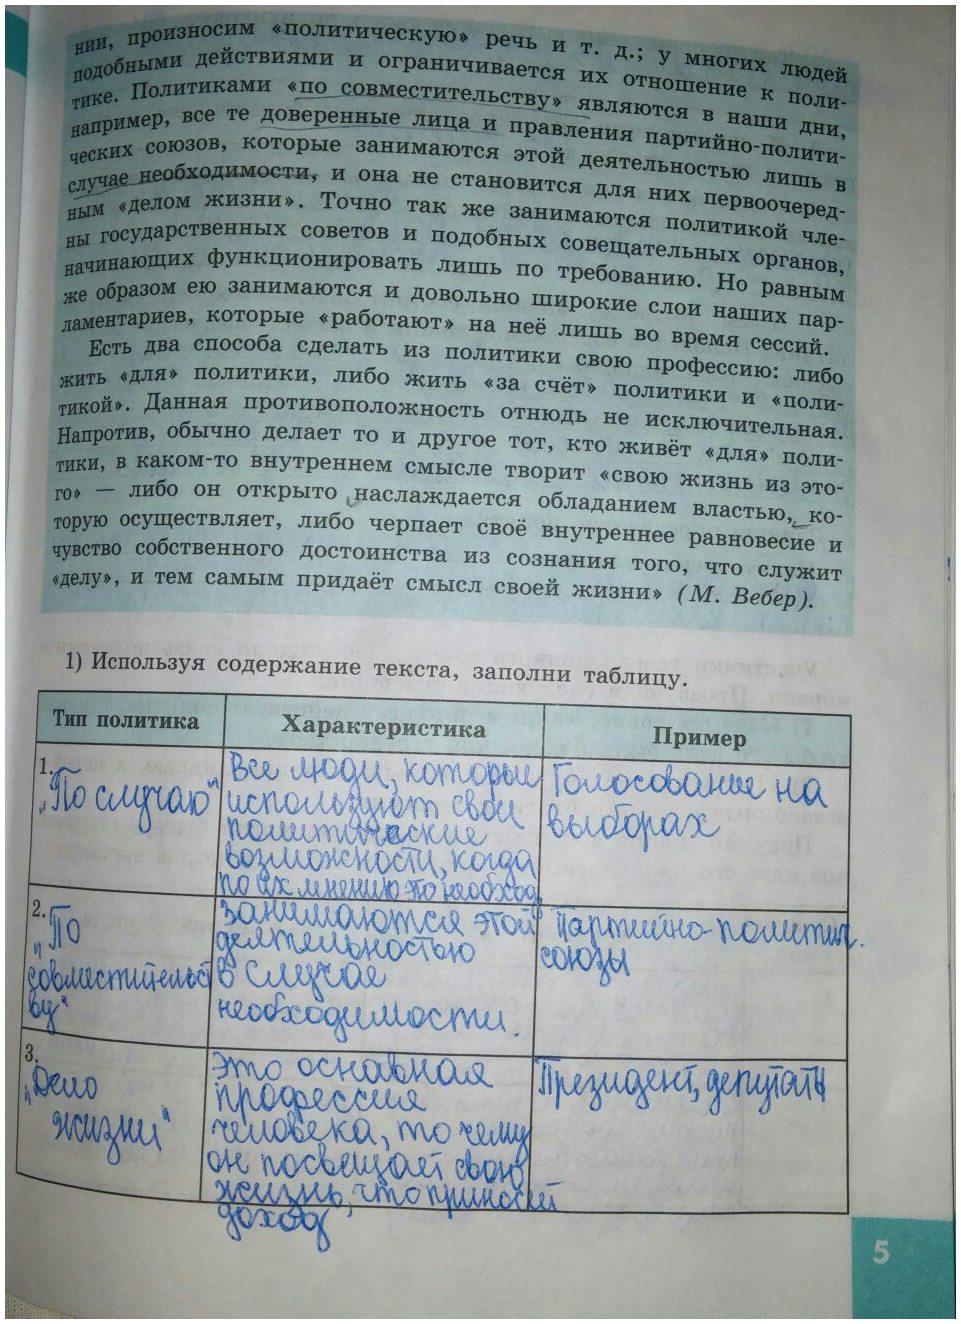 гдз 9 класс рабочая тетрадь страница 5 обществознание Котова, Лискова